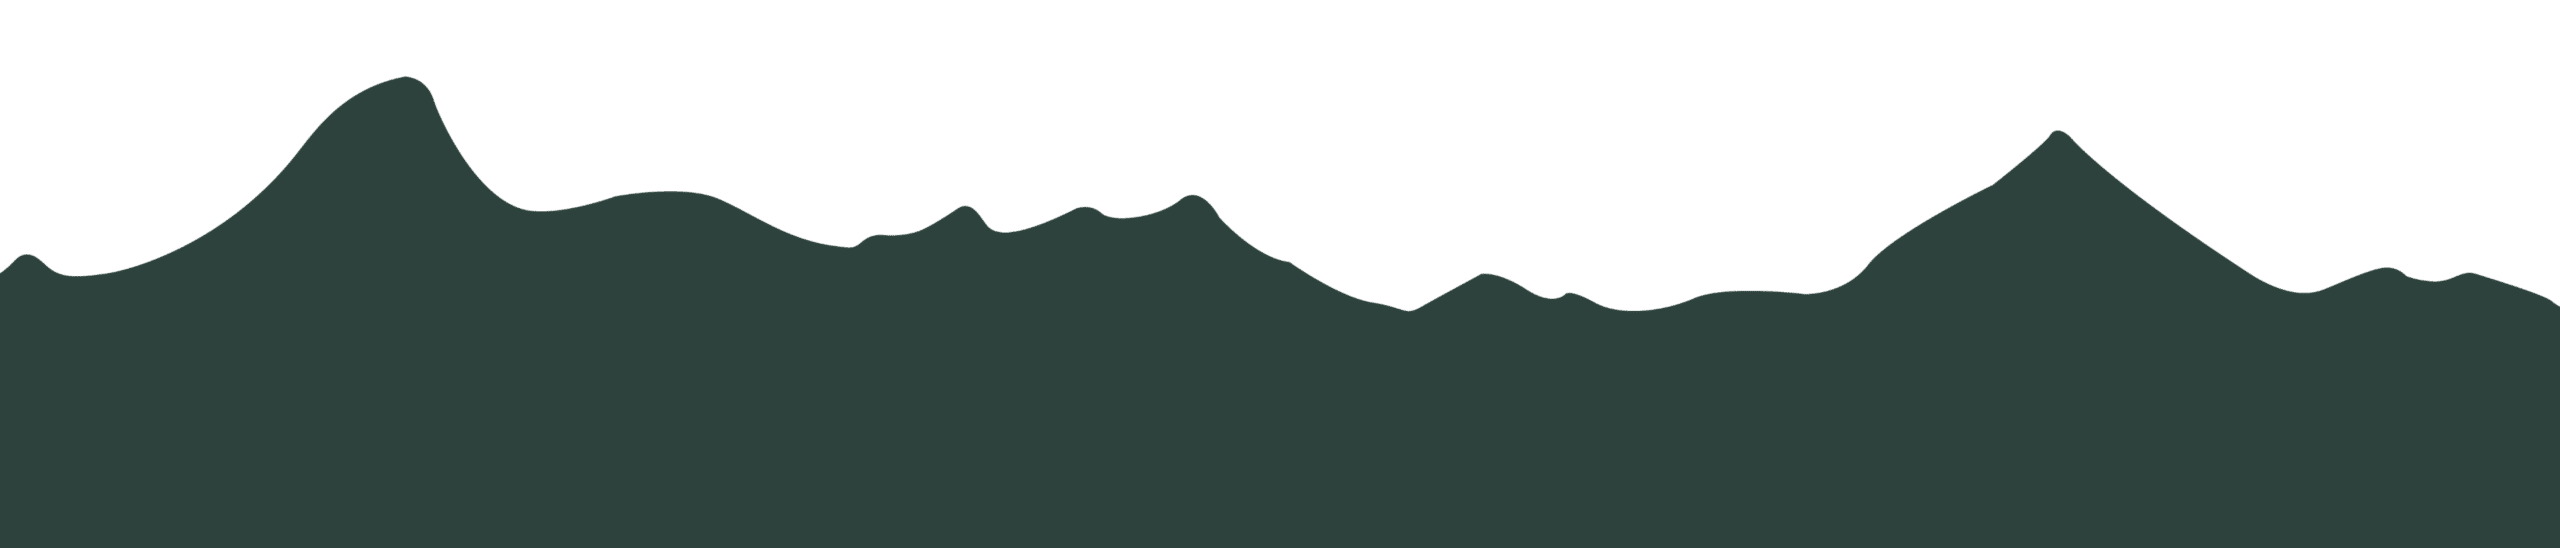 Chaîne de montagne, silhouette des Pyrénées